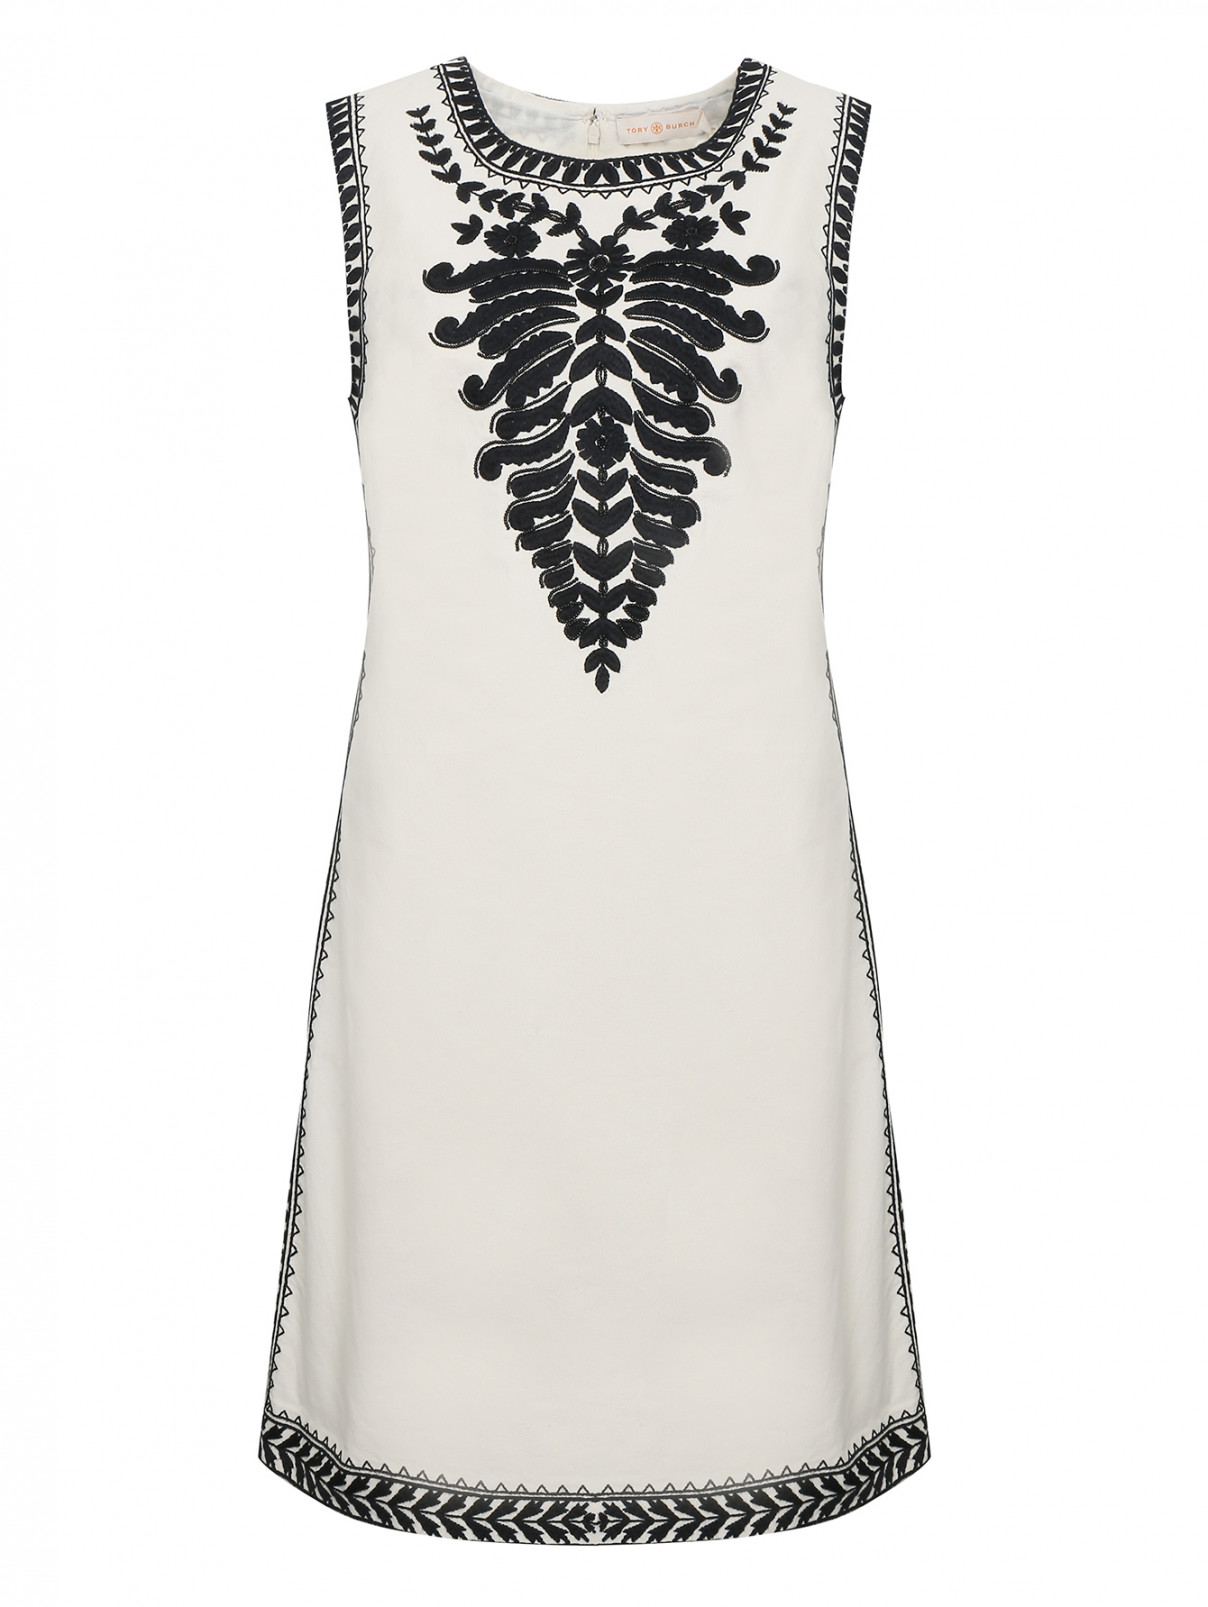 Платье из хлопка с вышивкой бисером Tory Burch  –  Общий вид  – Цвет:  Белый